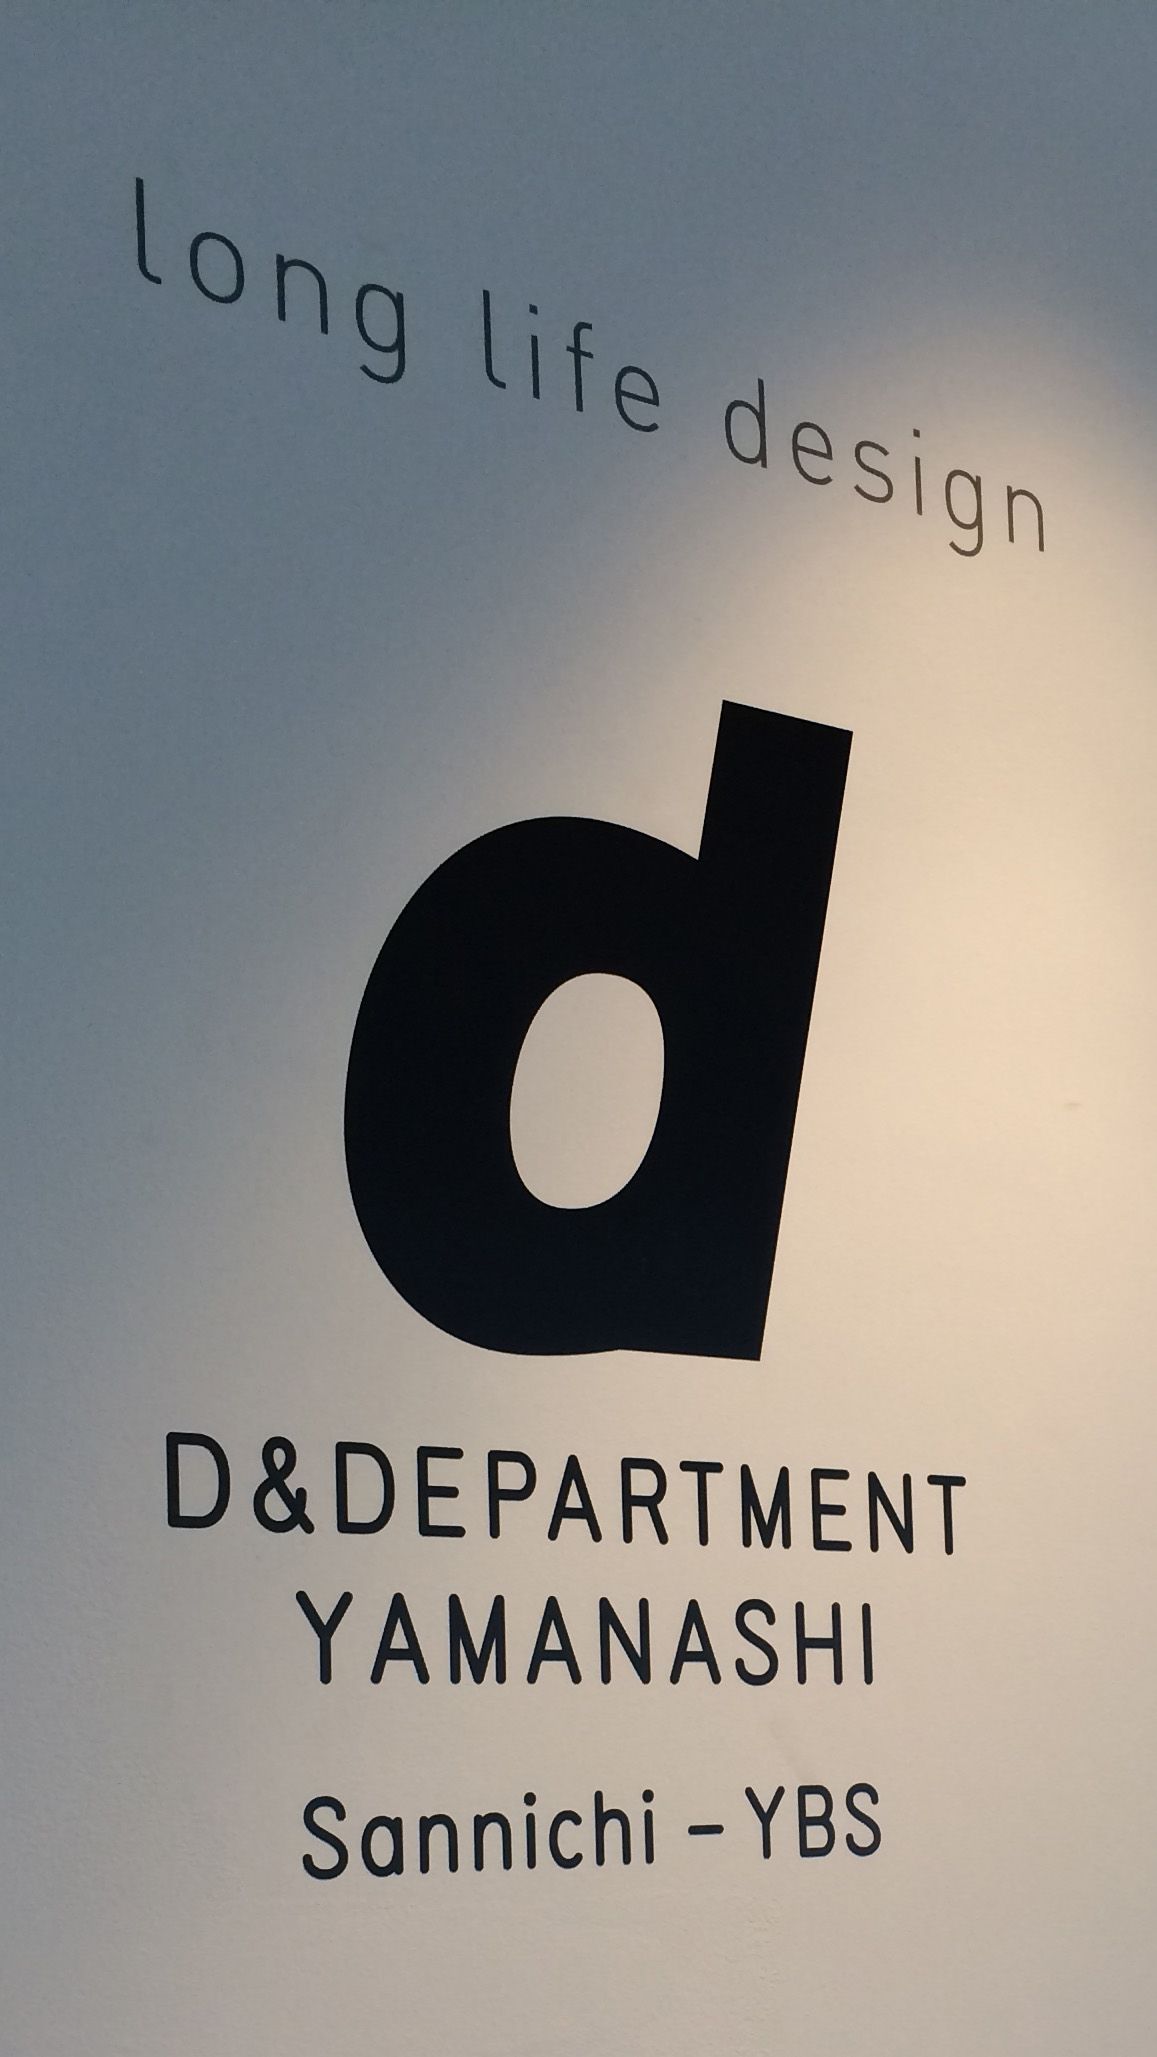 Long Life Design - D&Department Yamanashi。